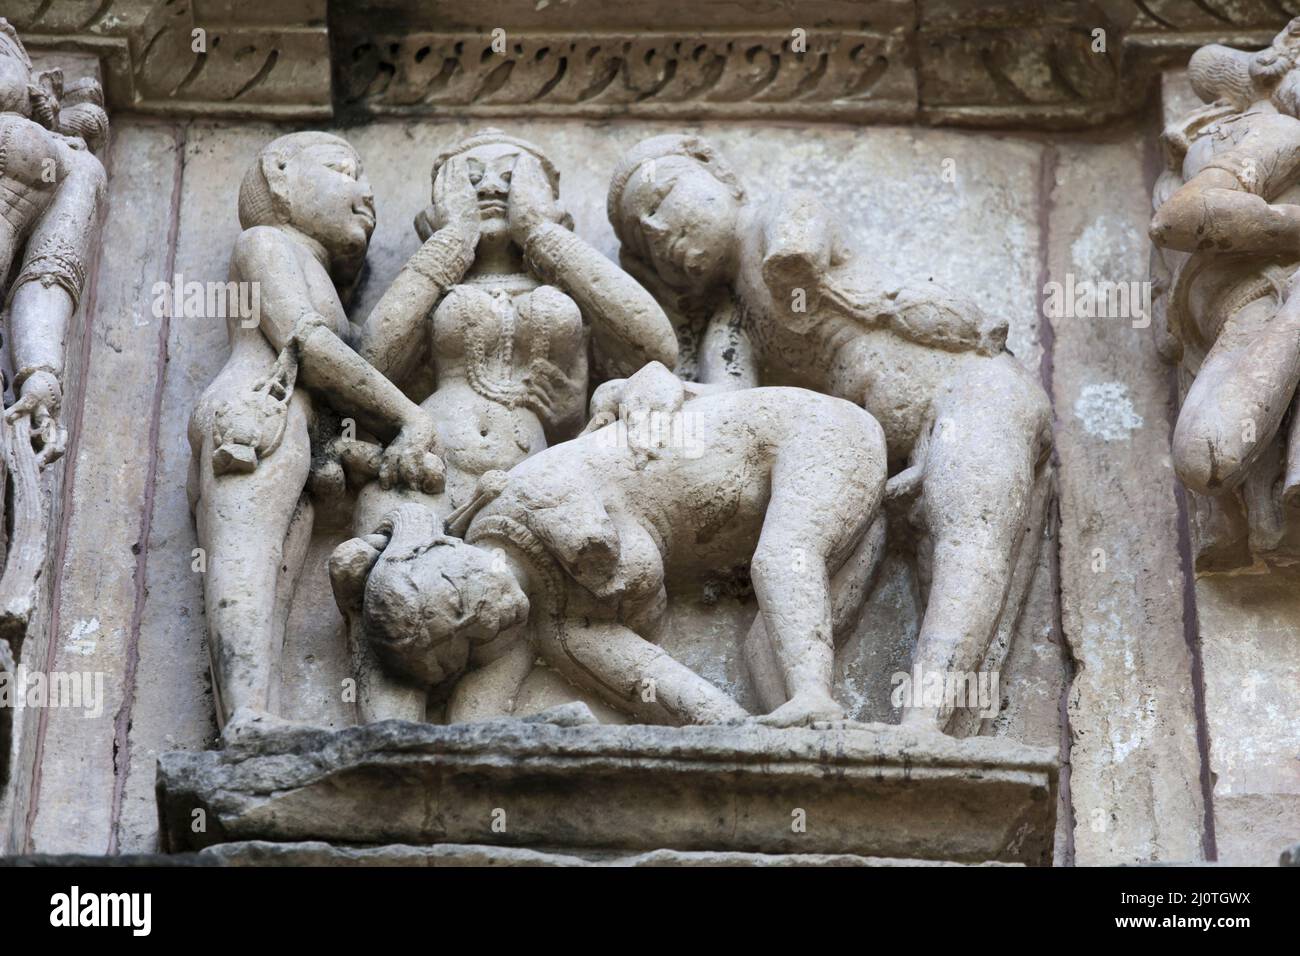 Stone carvings in Khajuraho India Stock Photo